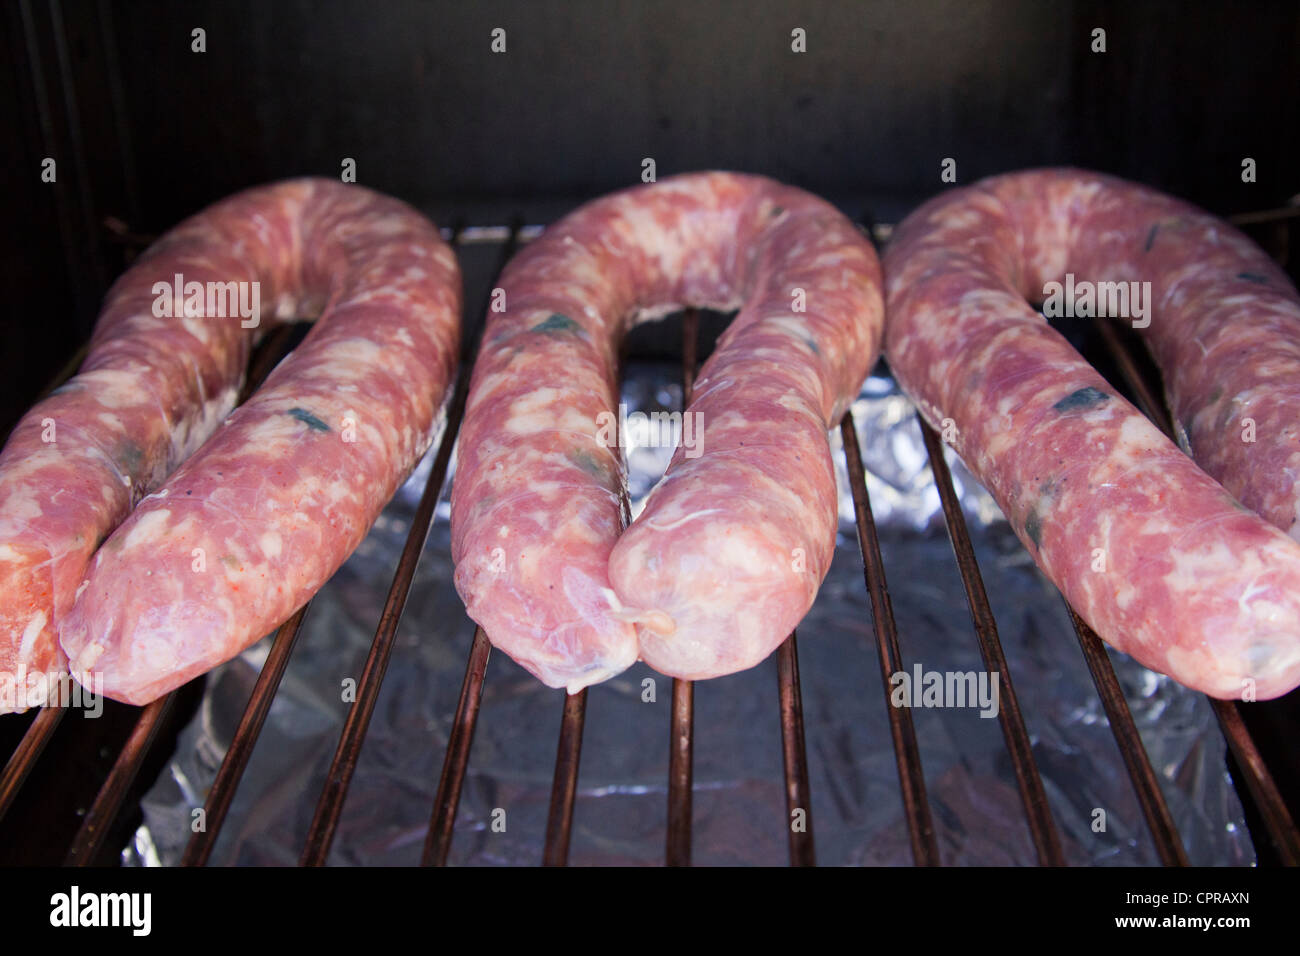 Sausage links on smoker Stock Photo